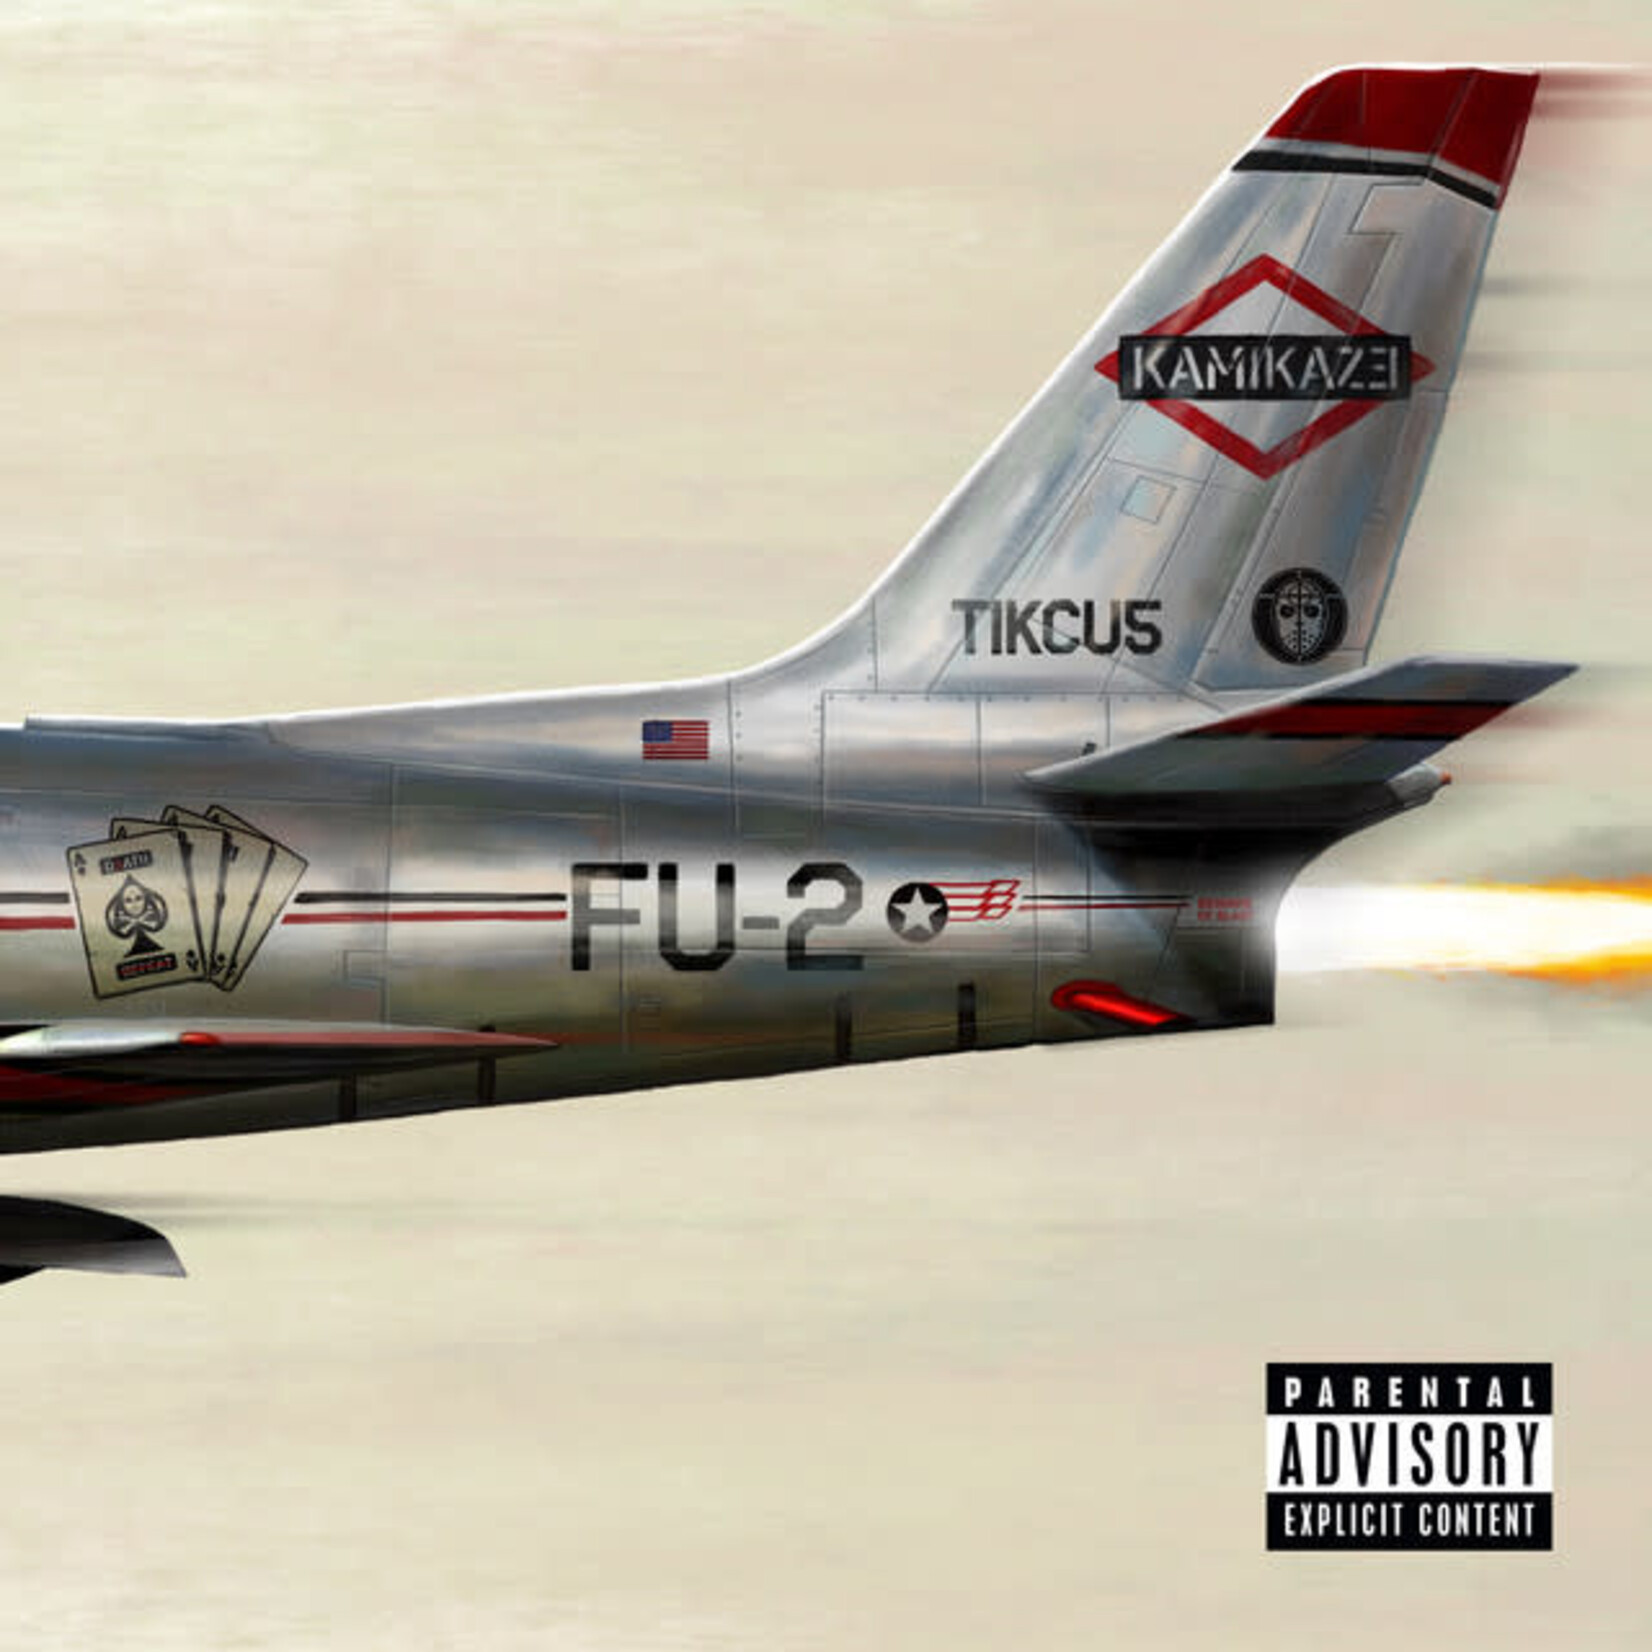 Eminem - Kamikaze [CD]